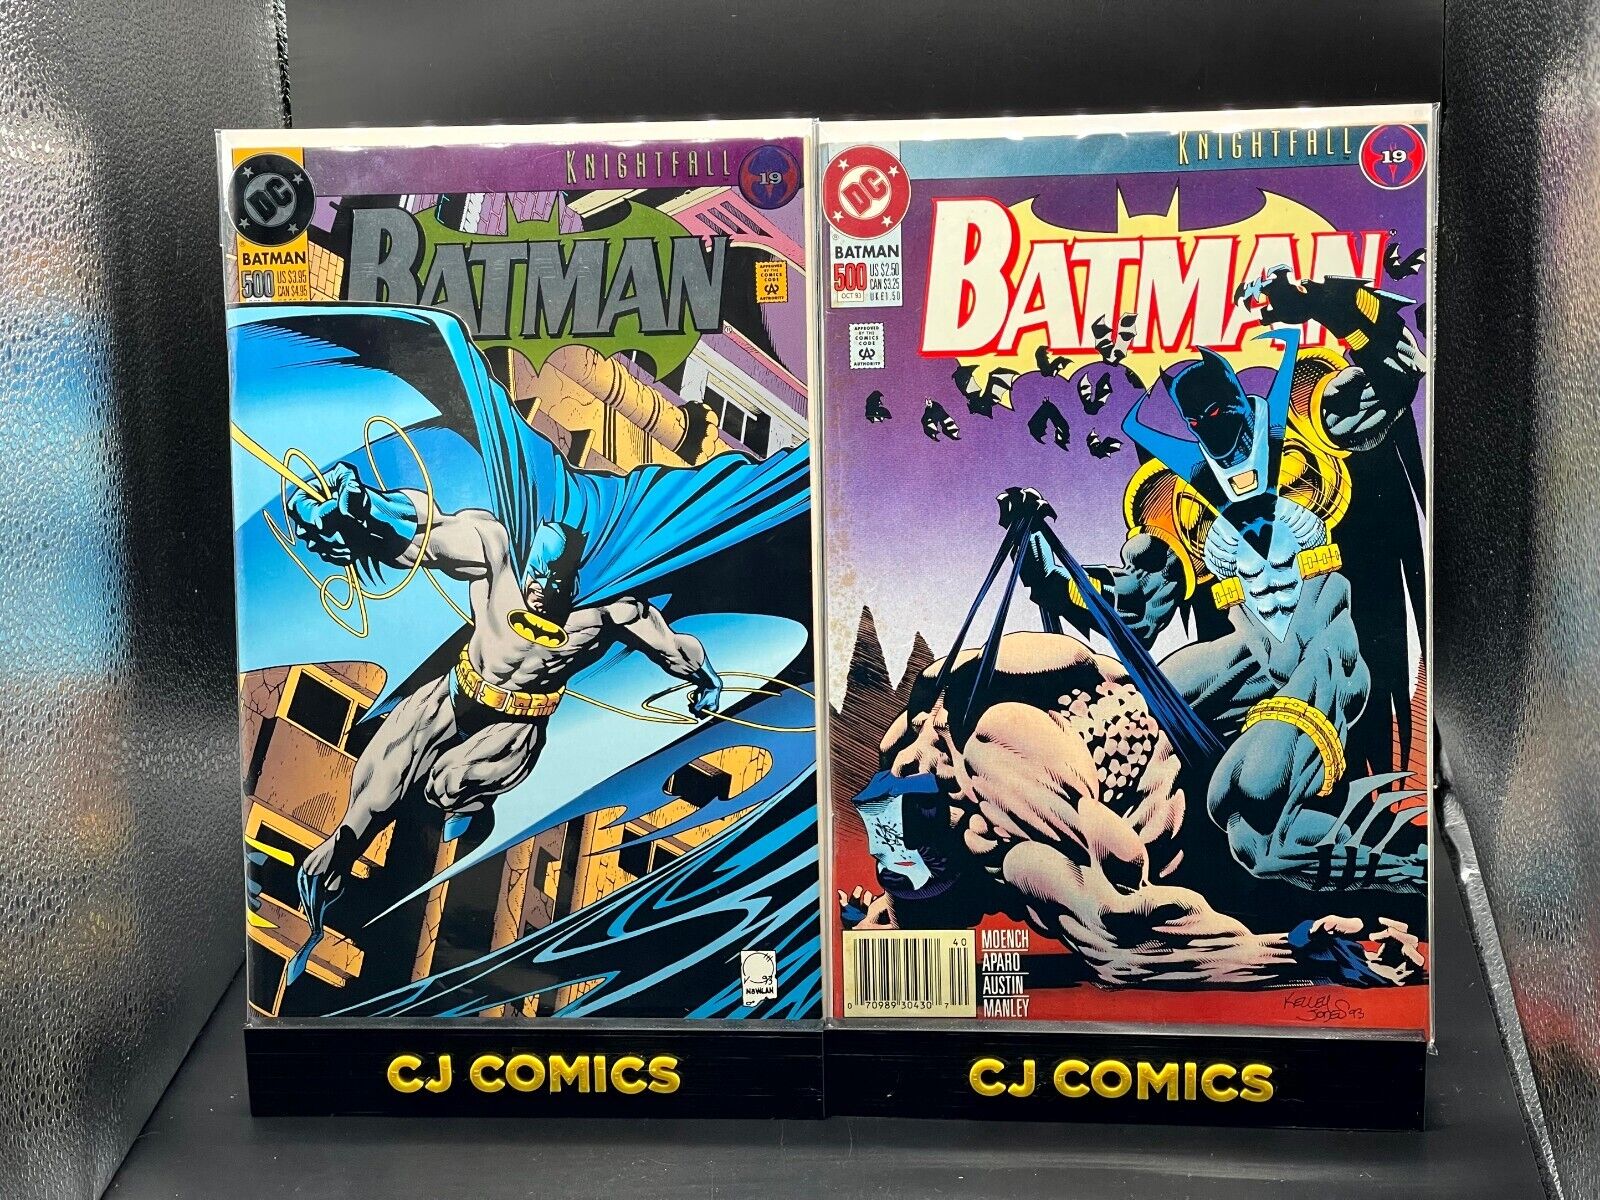 Batman #500 Joe Quesada Variant Cover and Newsstand